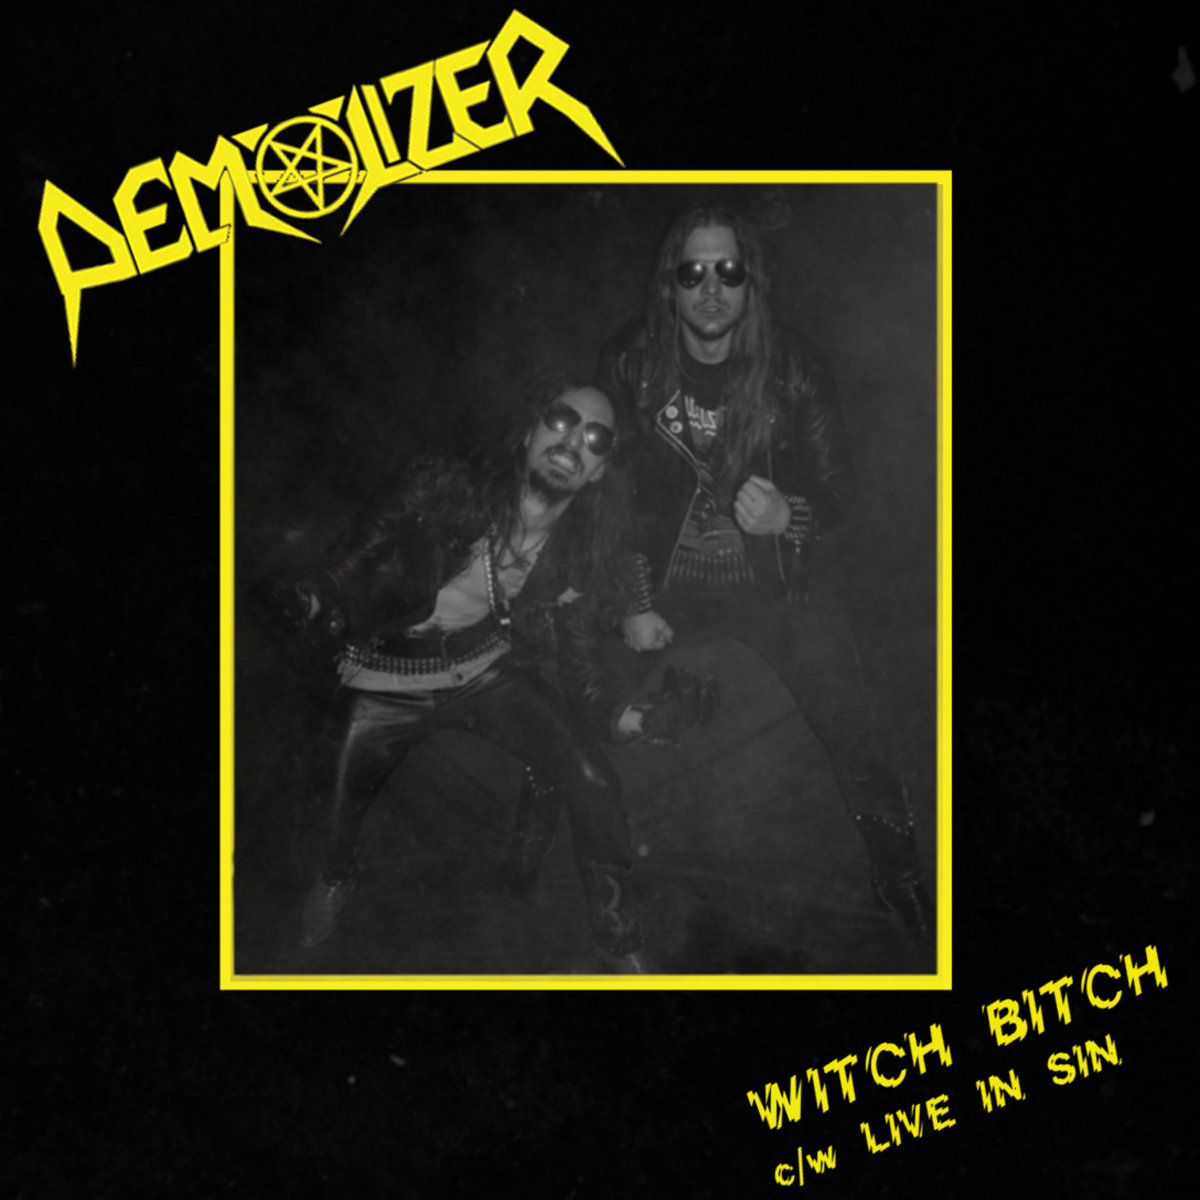 DEMOLIZER - Witch bitch